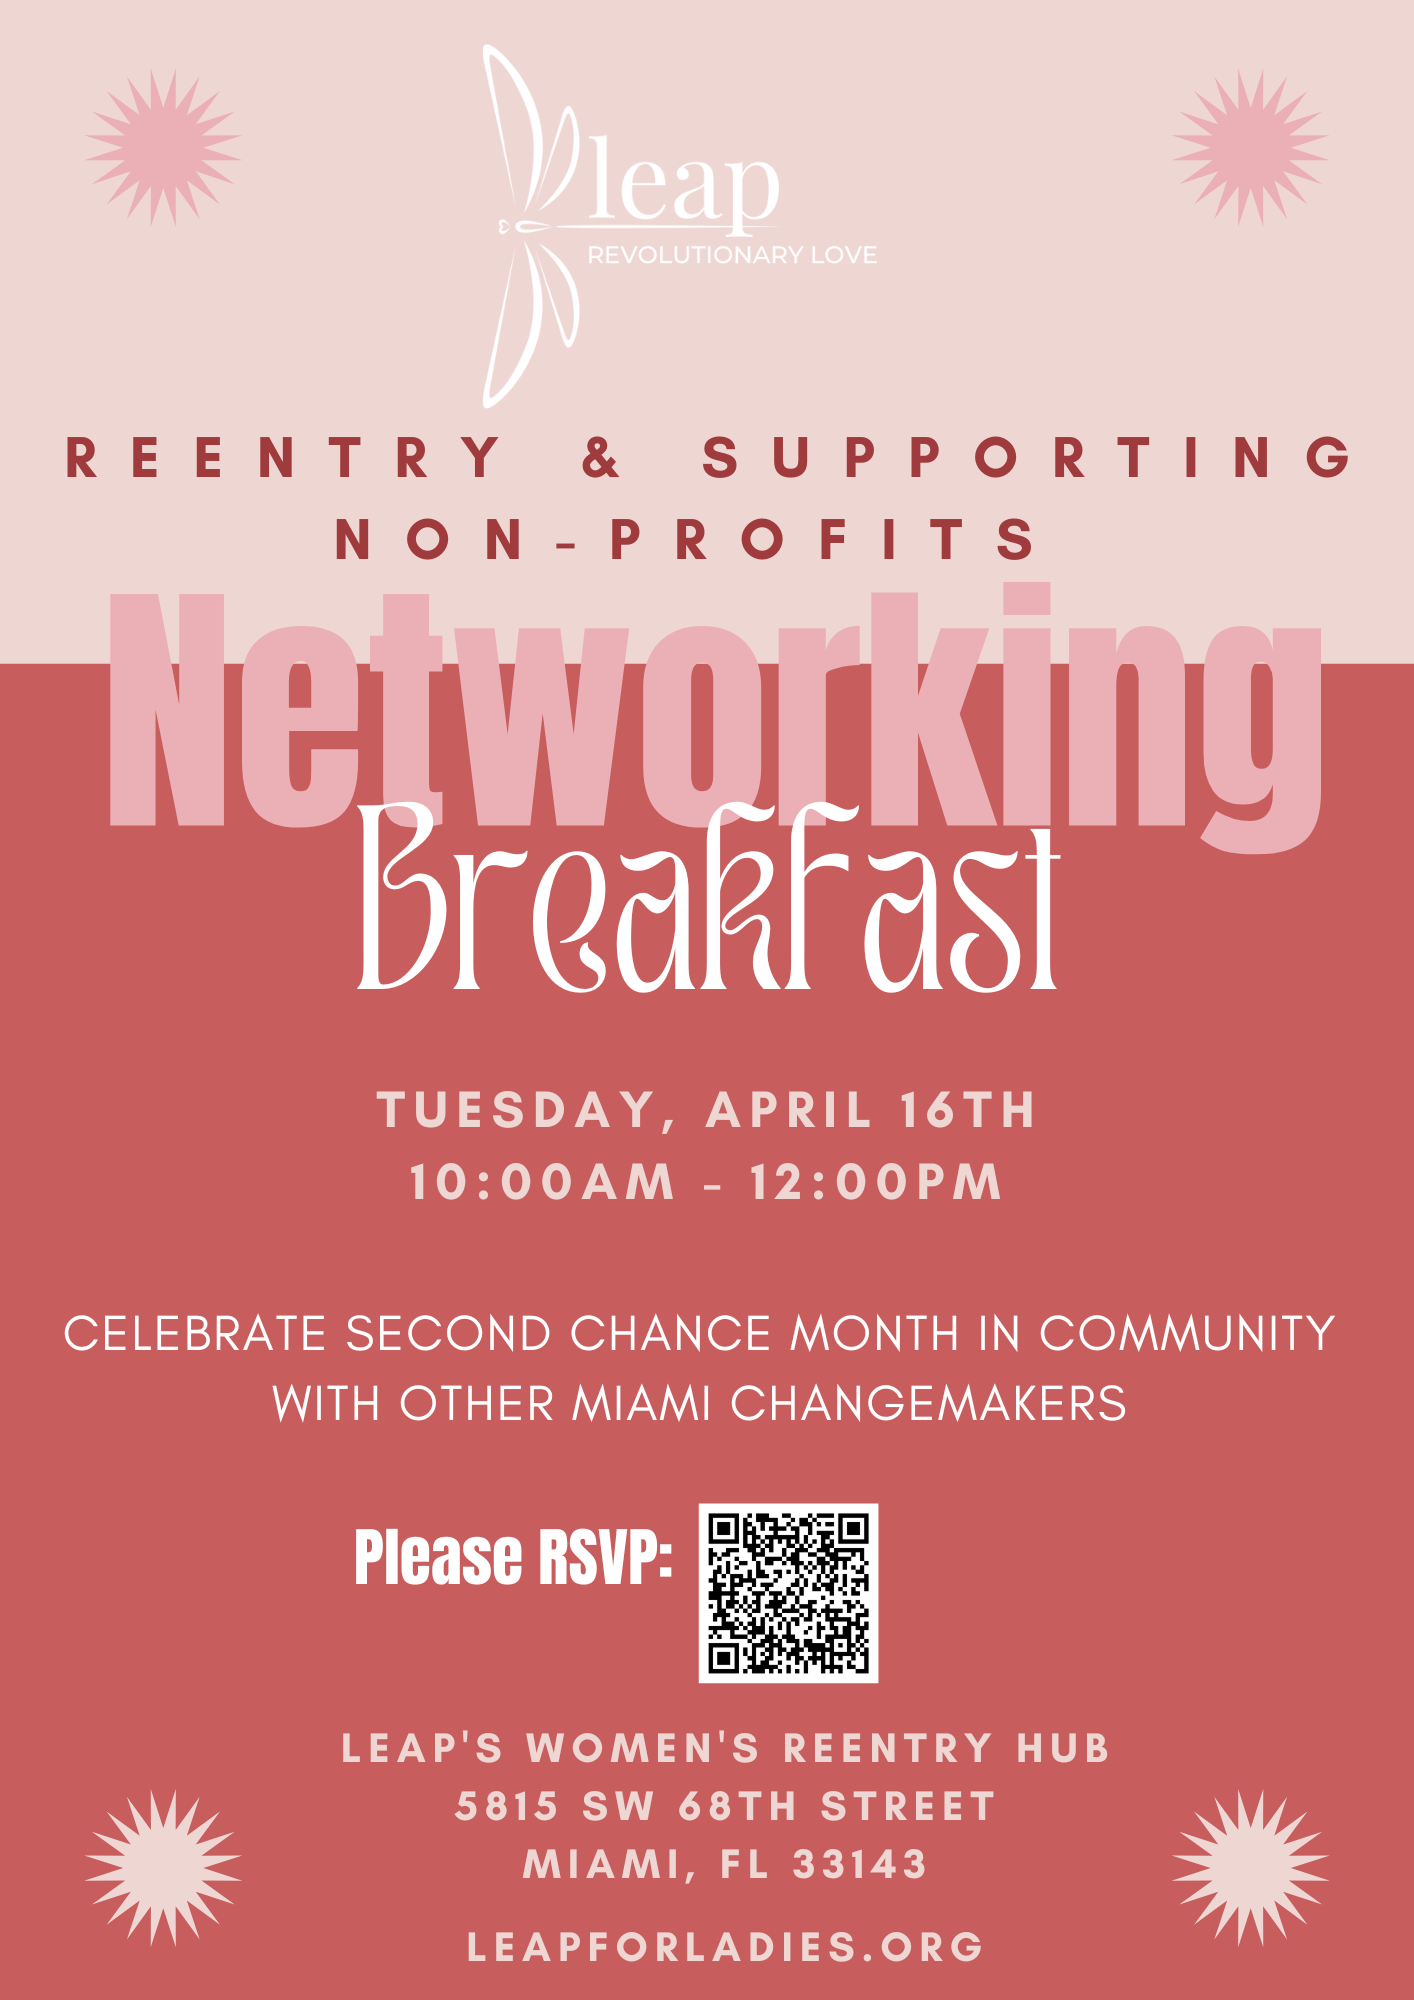 LEAP Networking Breakfast @ LEAP Women's Reentry Hub